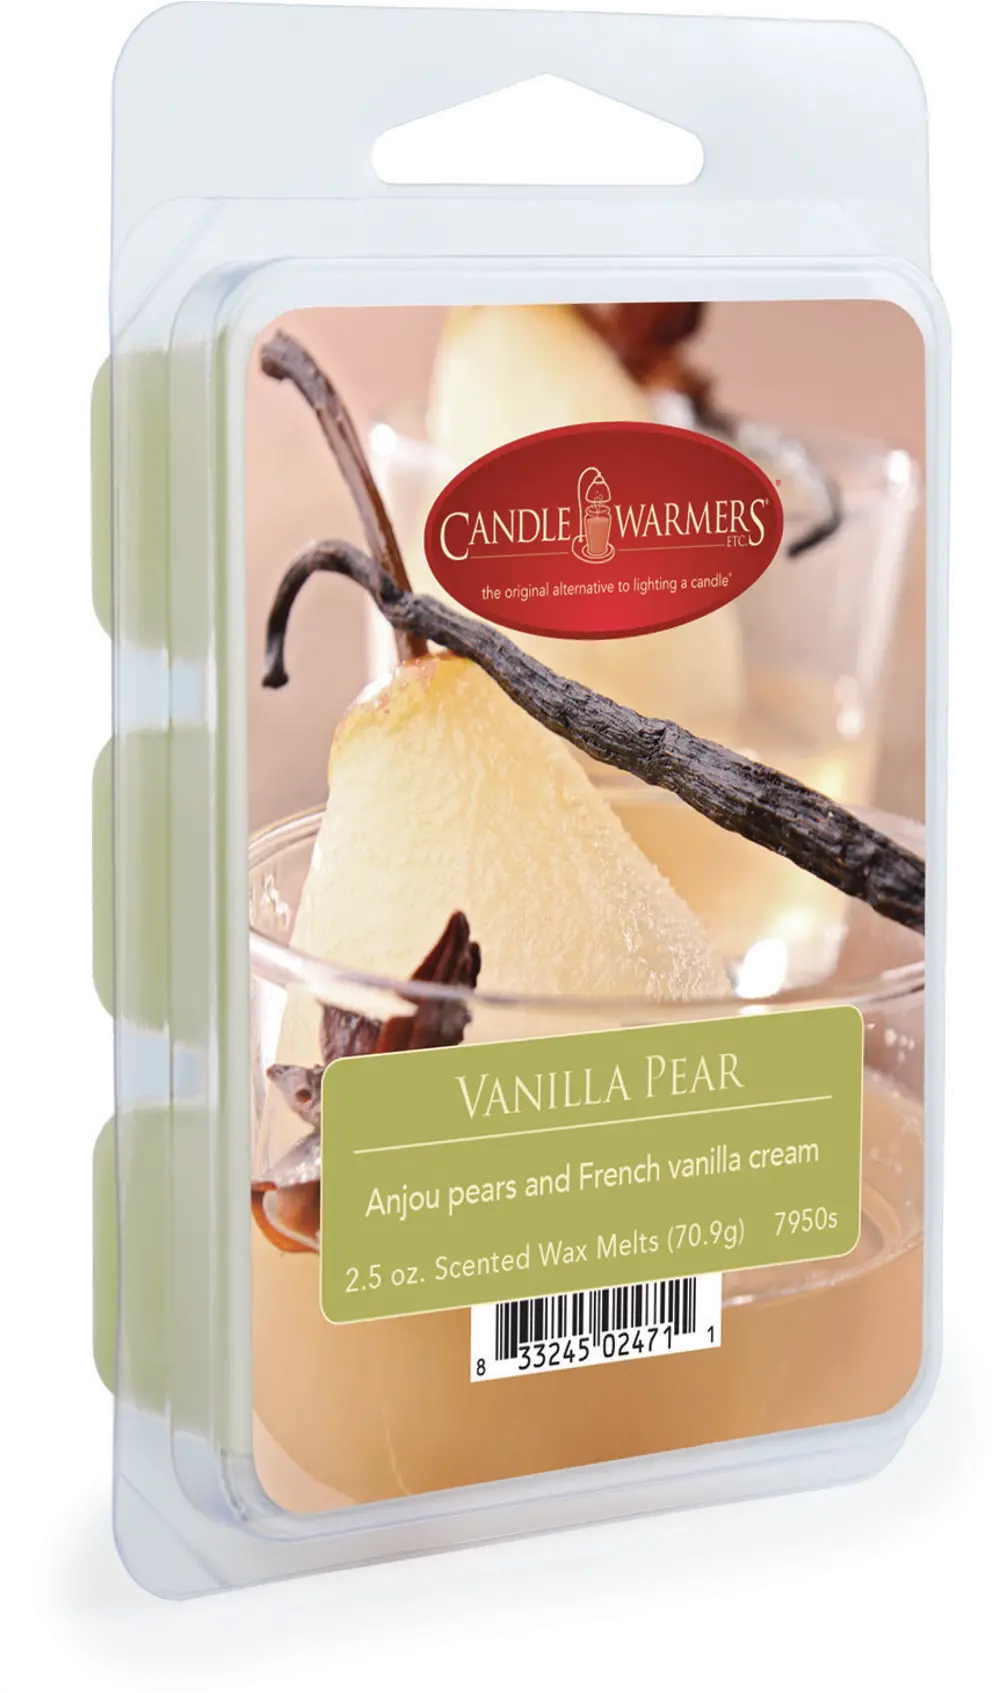 Vanilla Pear 2.5oz Wax Melt - Candle Warmers-1